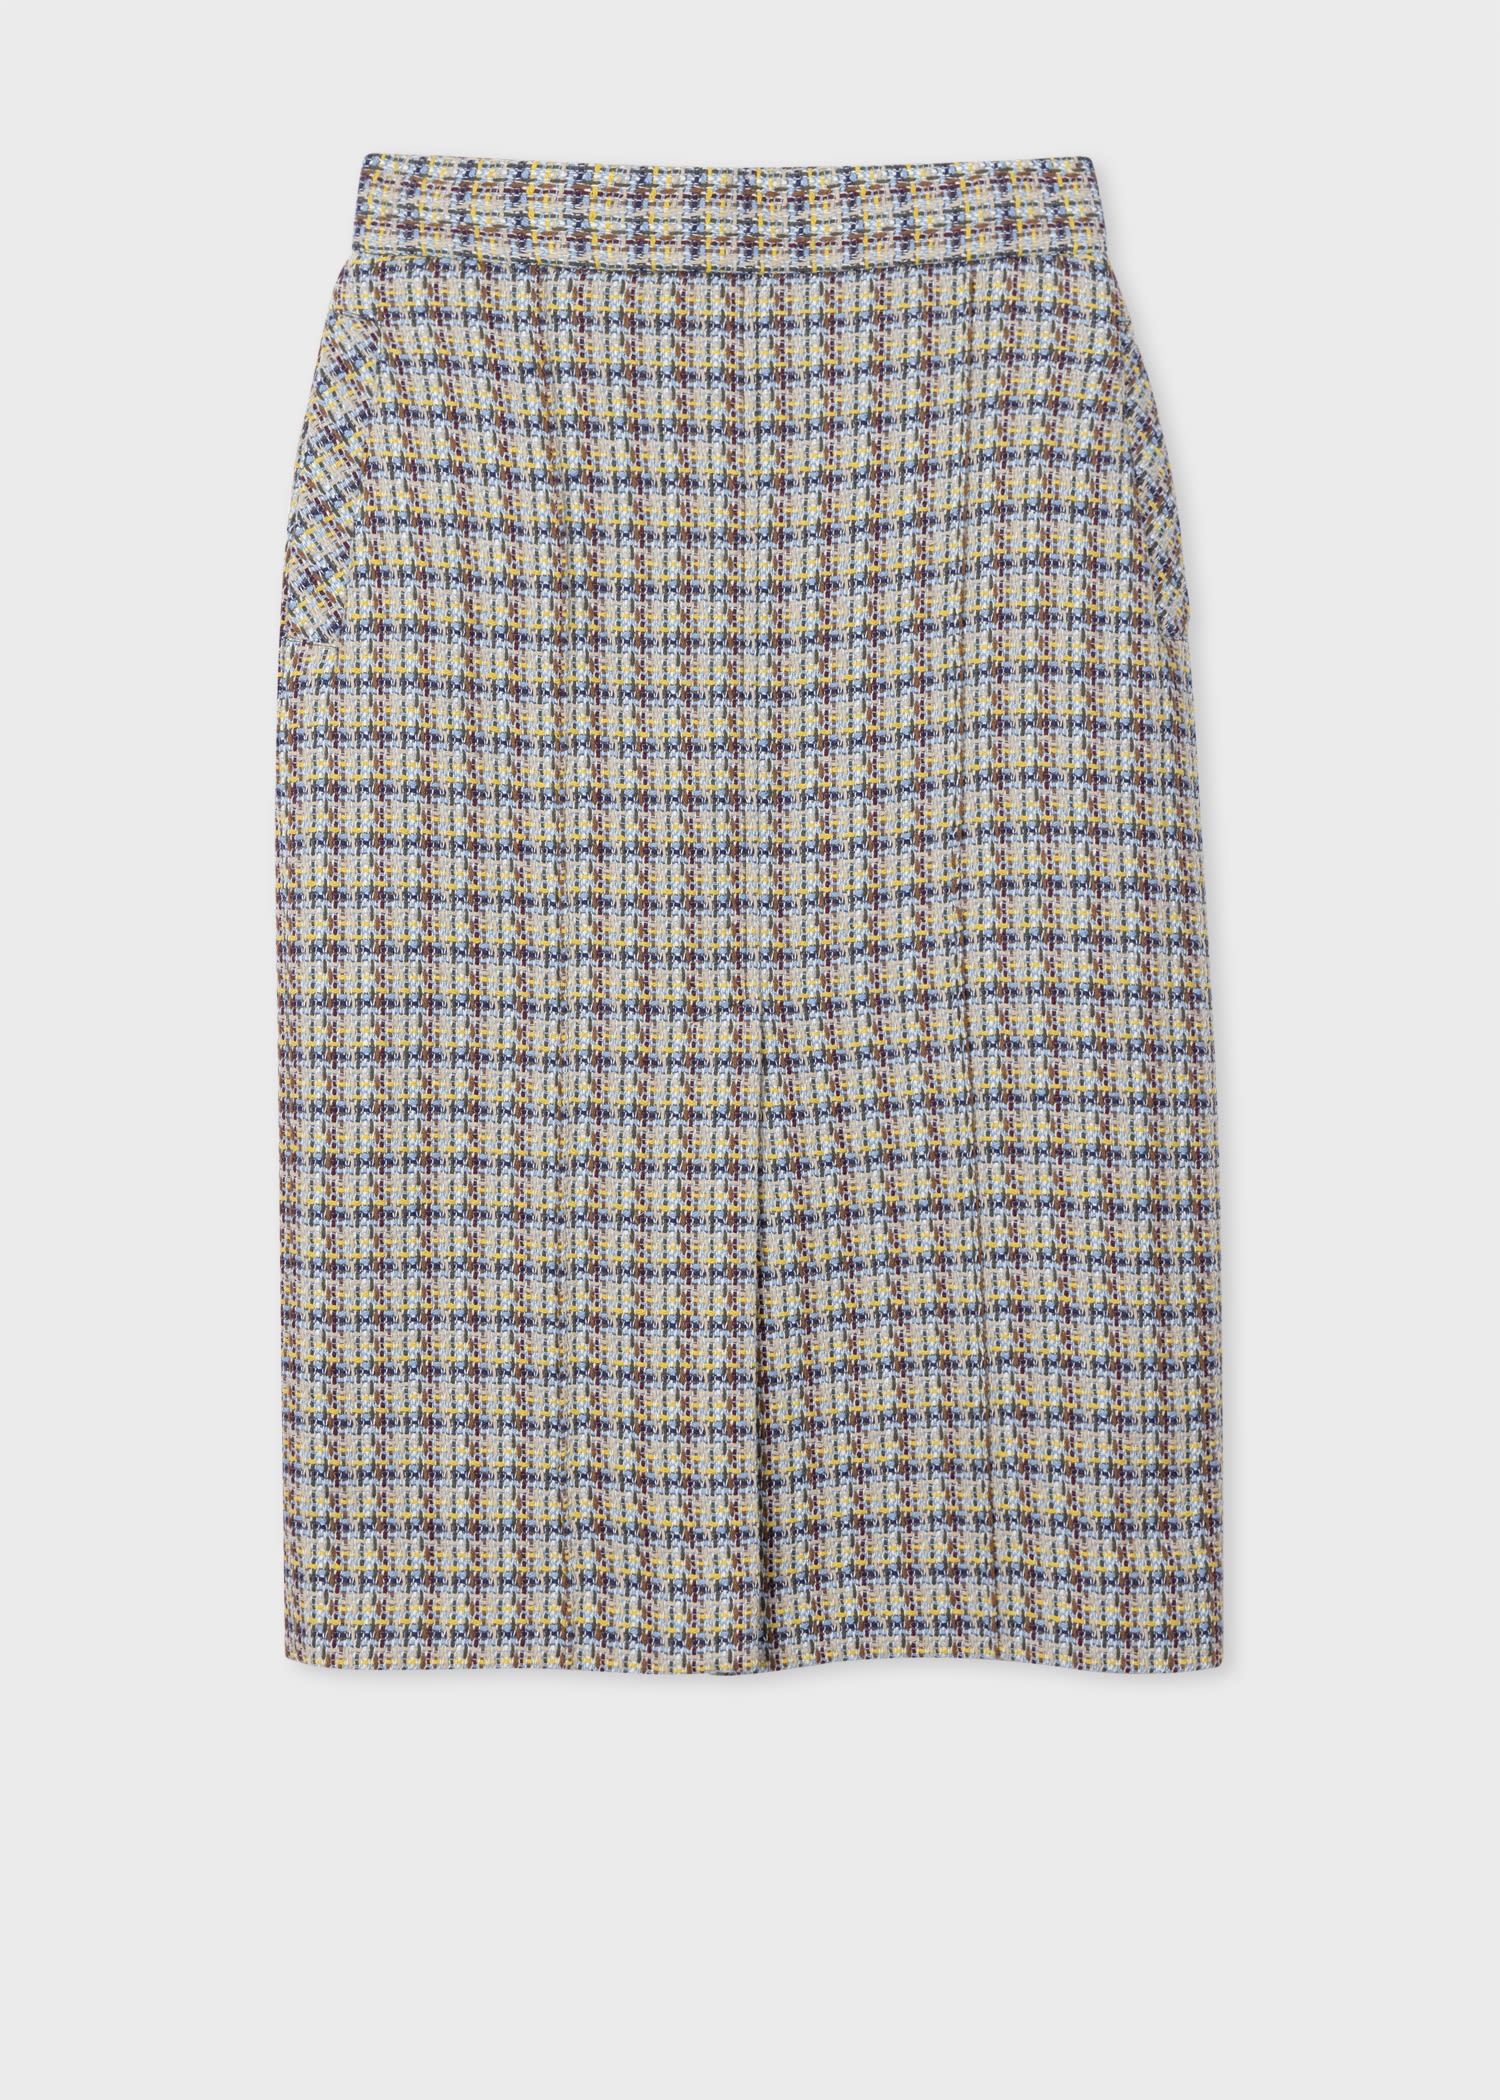 Cotton Tweed Skirt Suit - 5